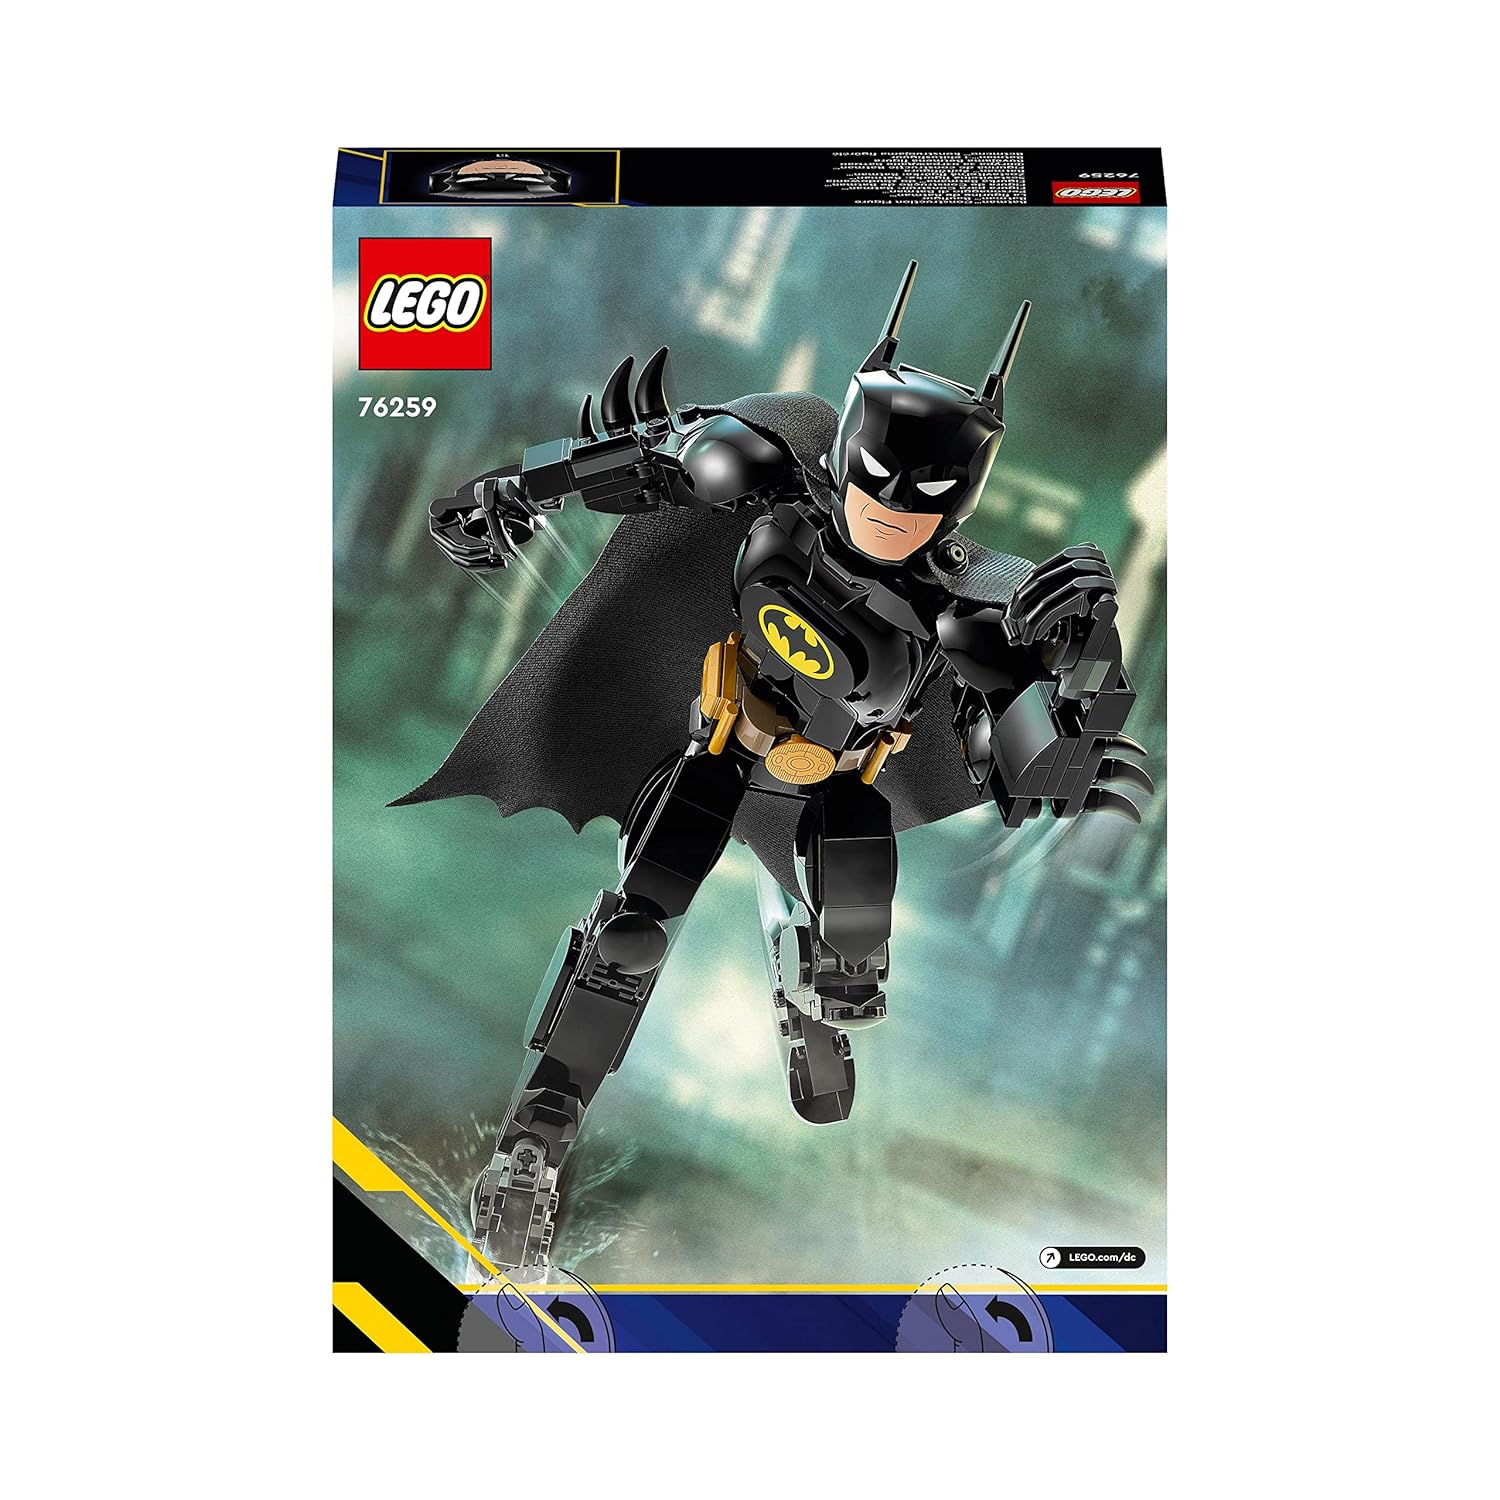 LEGO DC Batman Construction Figure Building Kit for Ages 8+